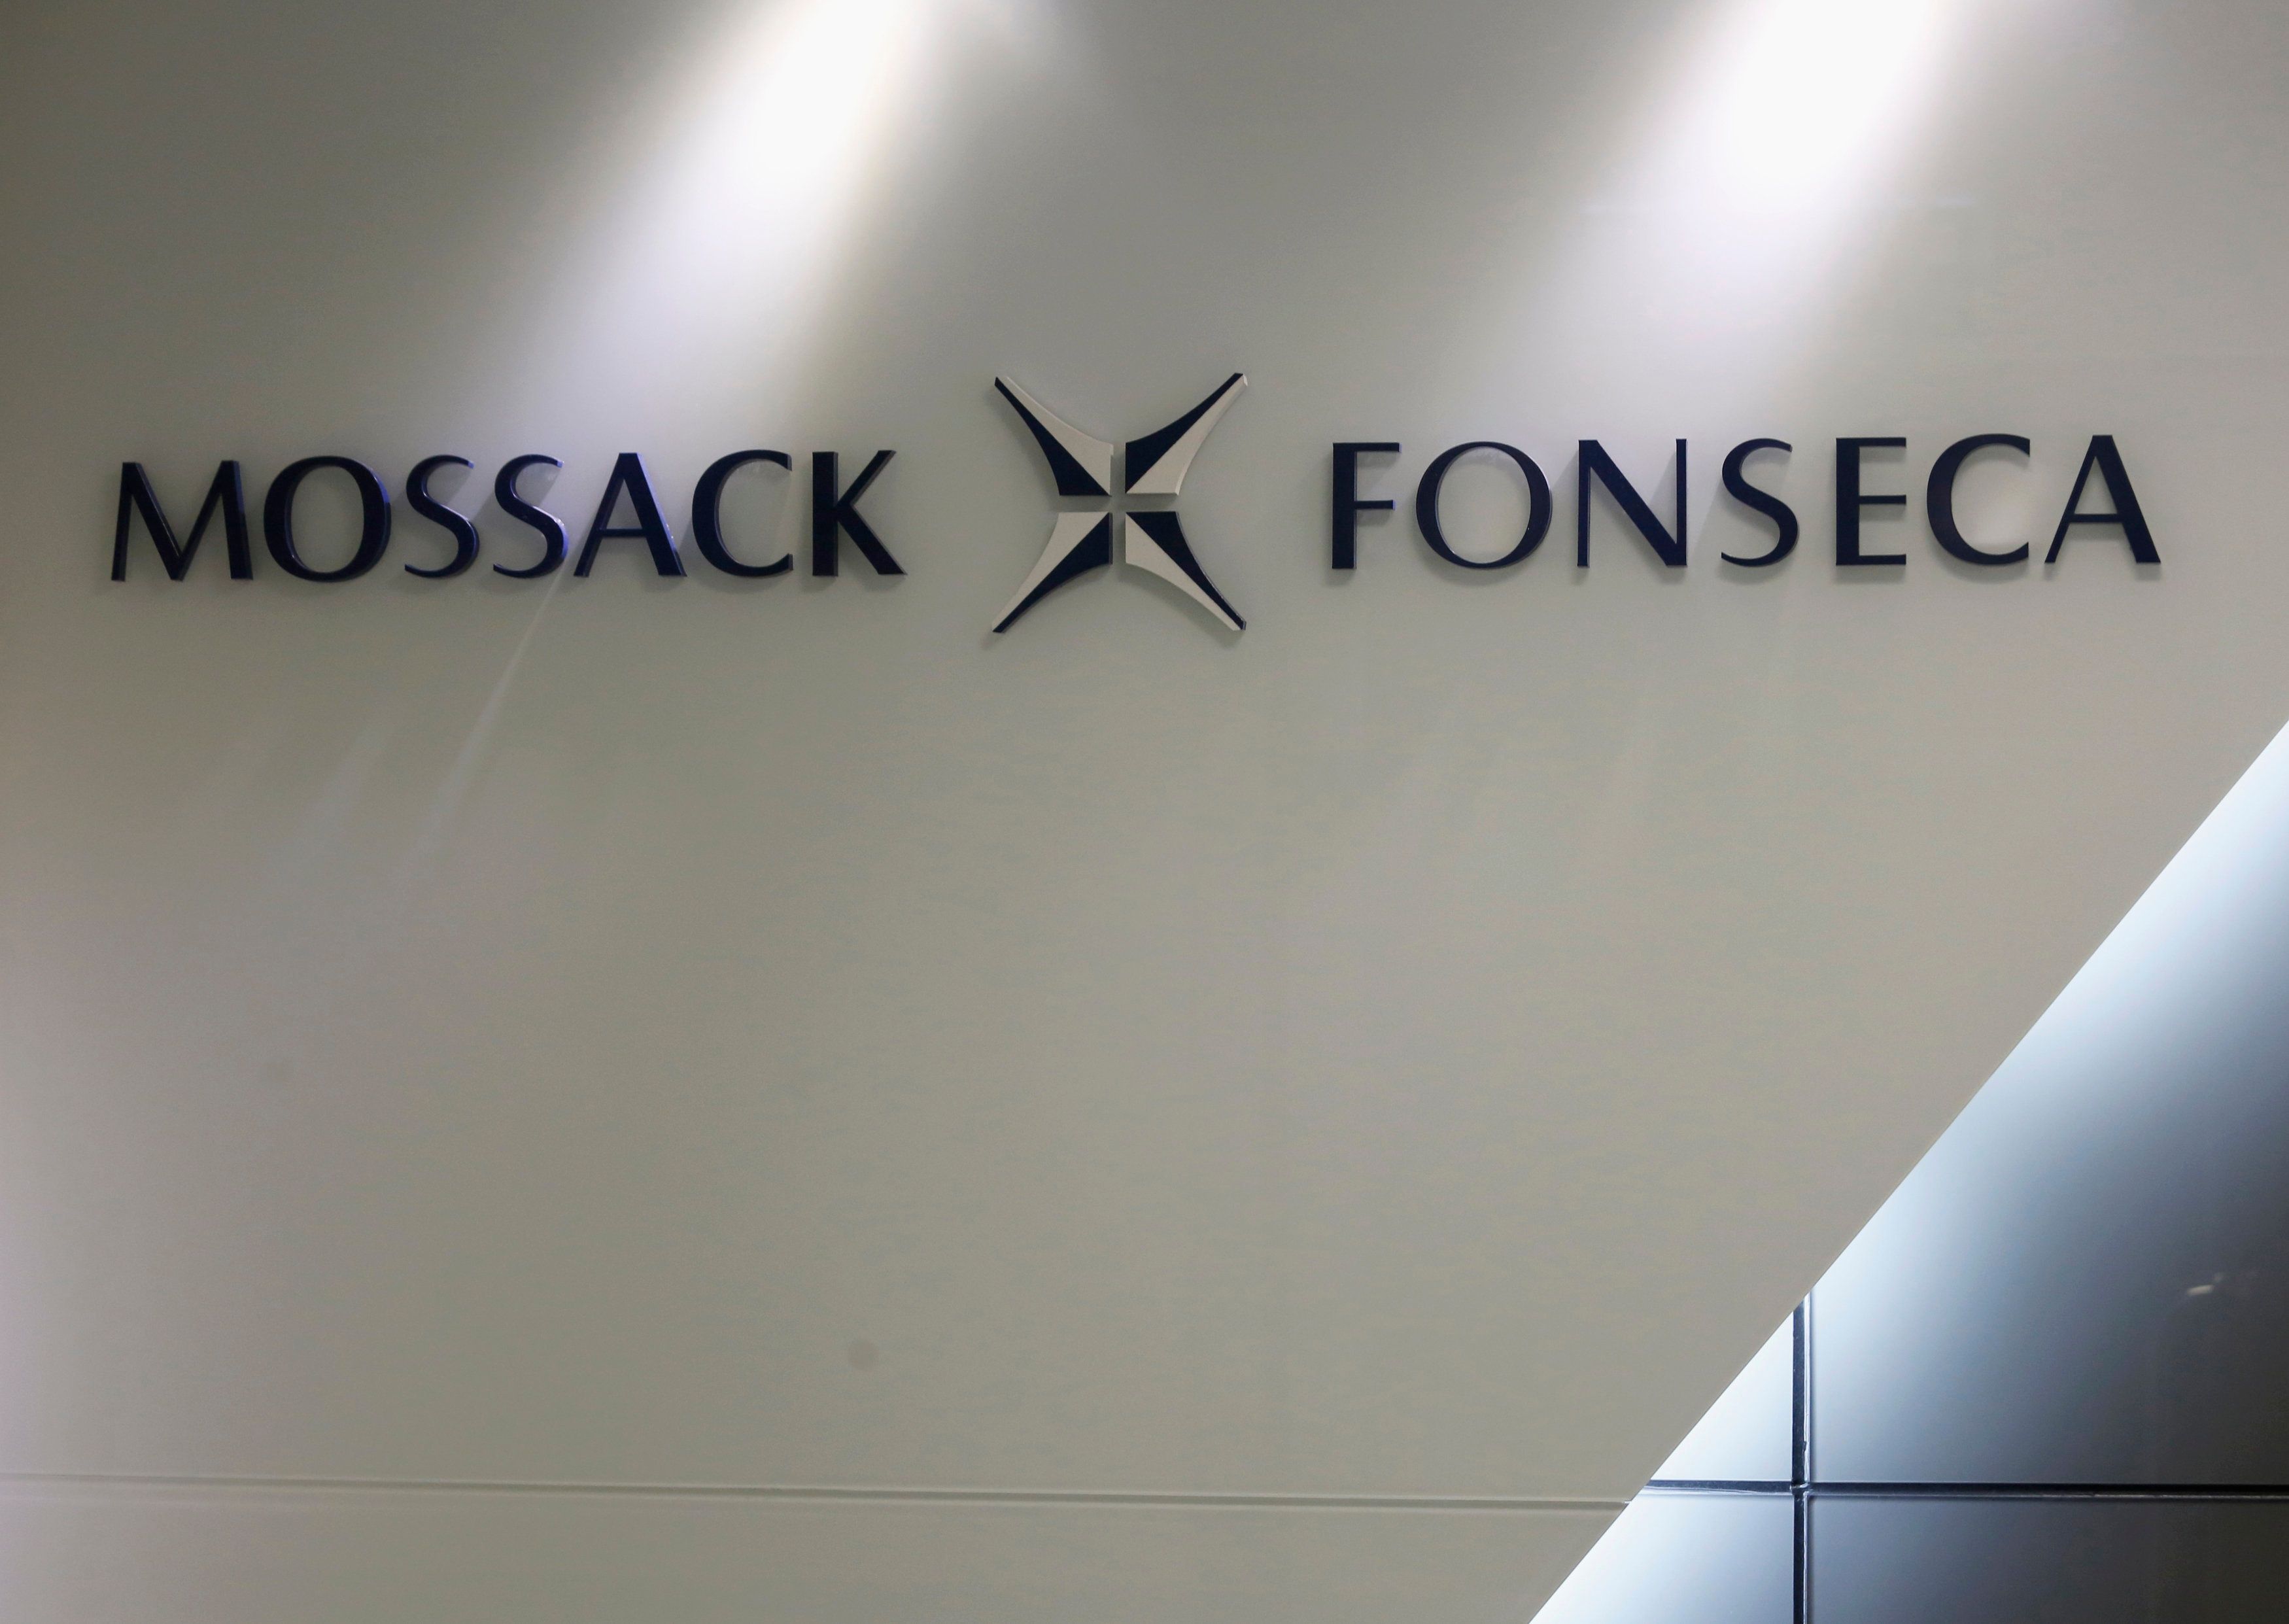 Los 11 millones de documentos se filtraron de la firma de abogados Mossack Fonseca.